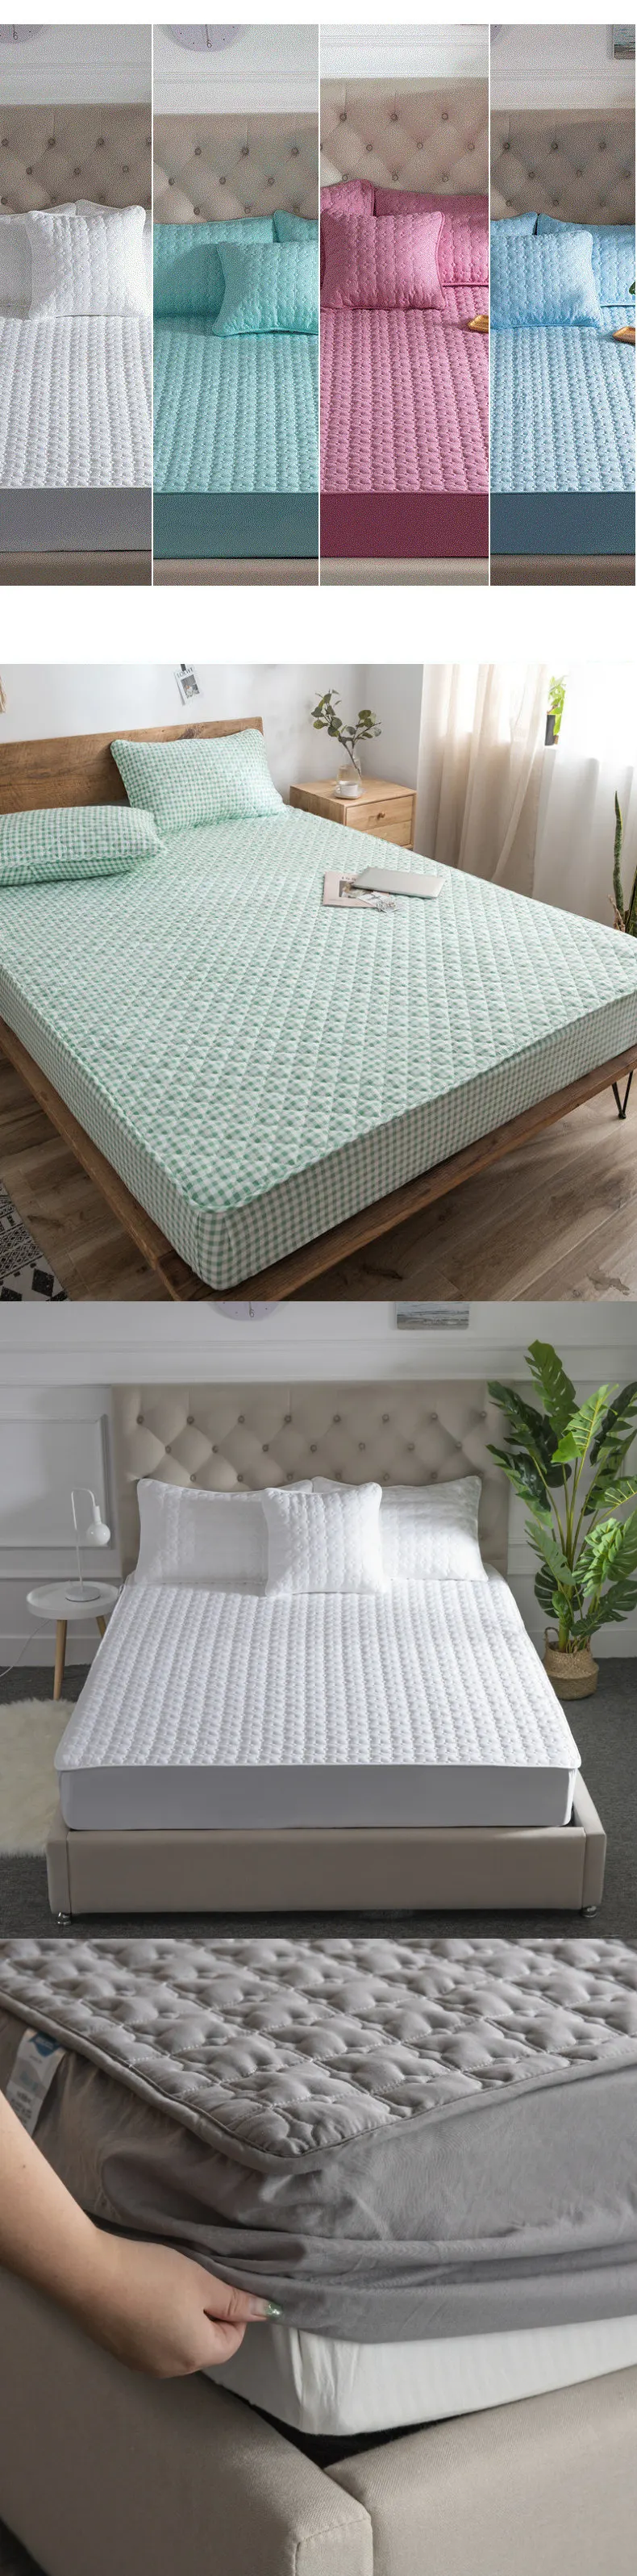 Анти-пылеулавливающий Воздухопроницаемый наматрасник для кровати с эластичное покрытие для 10-14 дюймов Высота матраса и наволочка